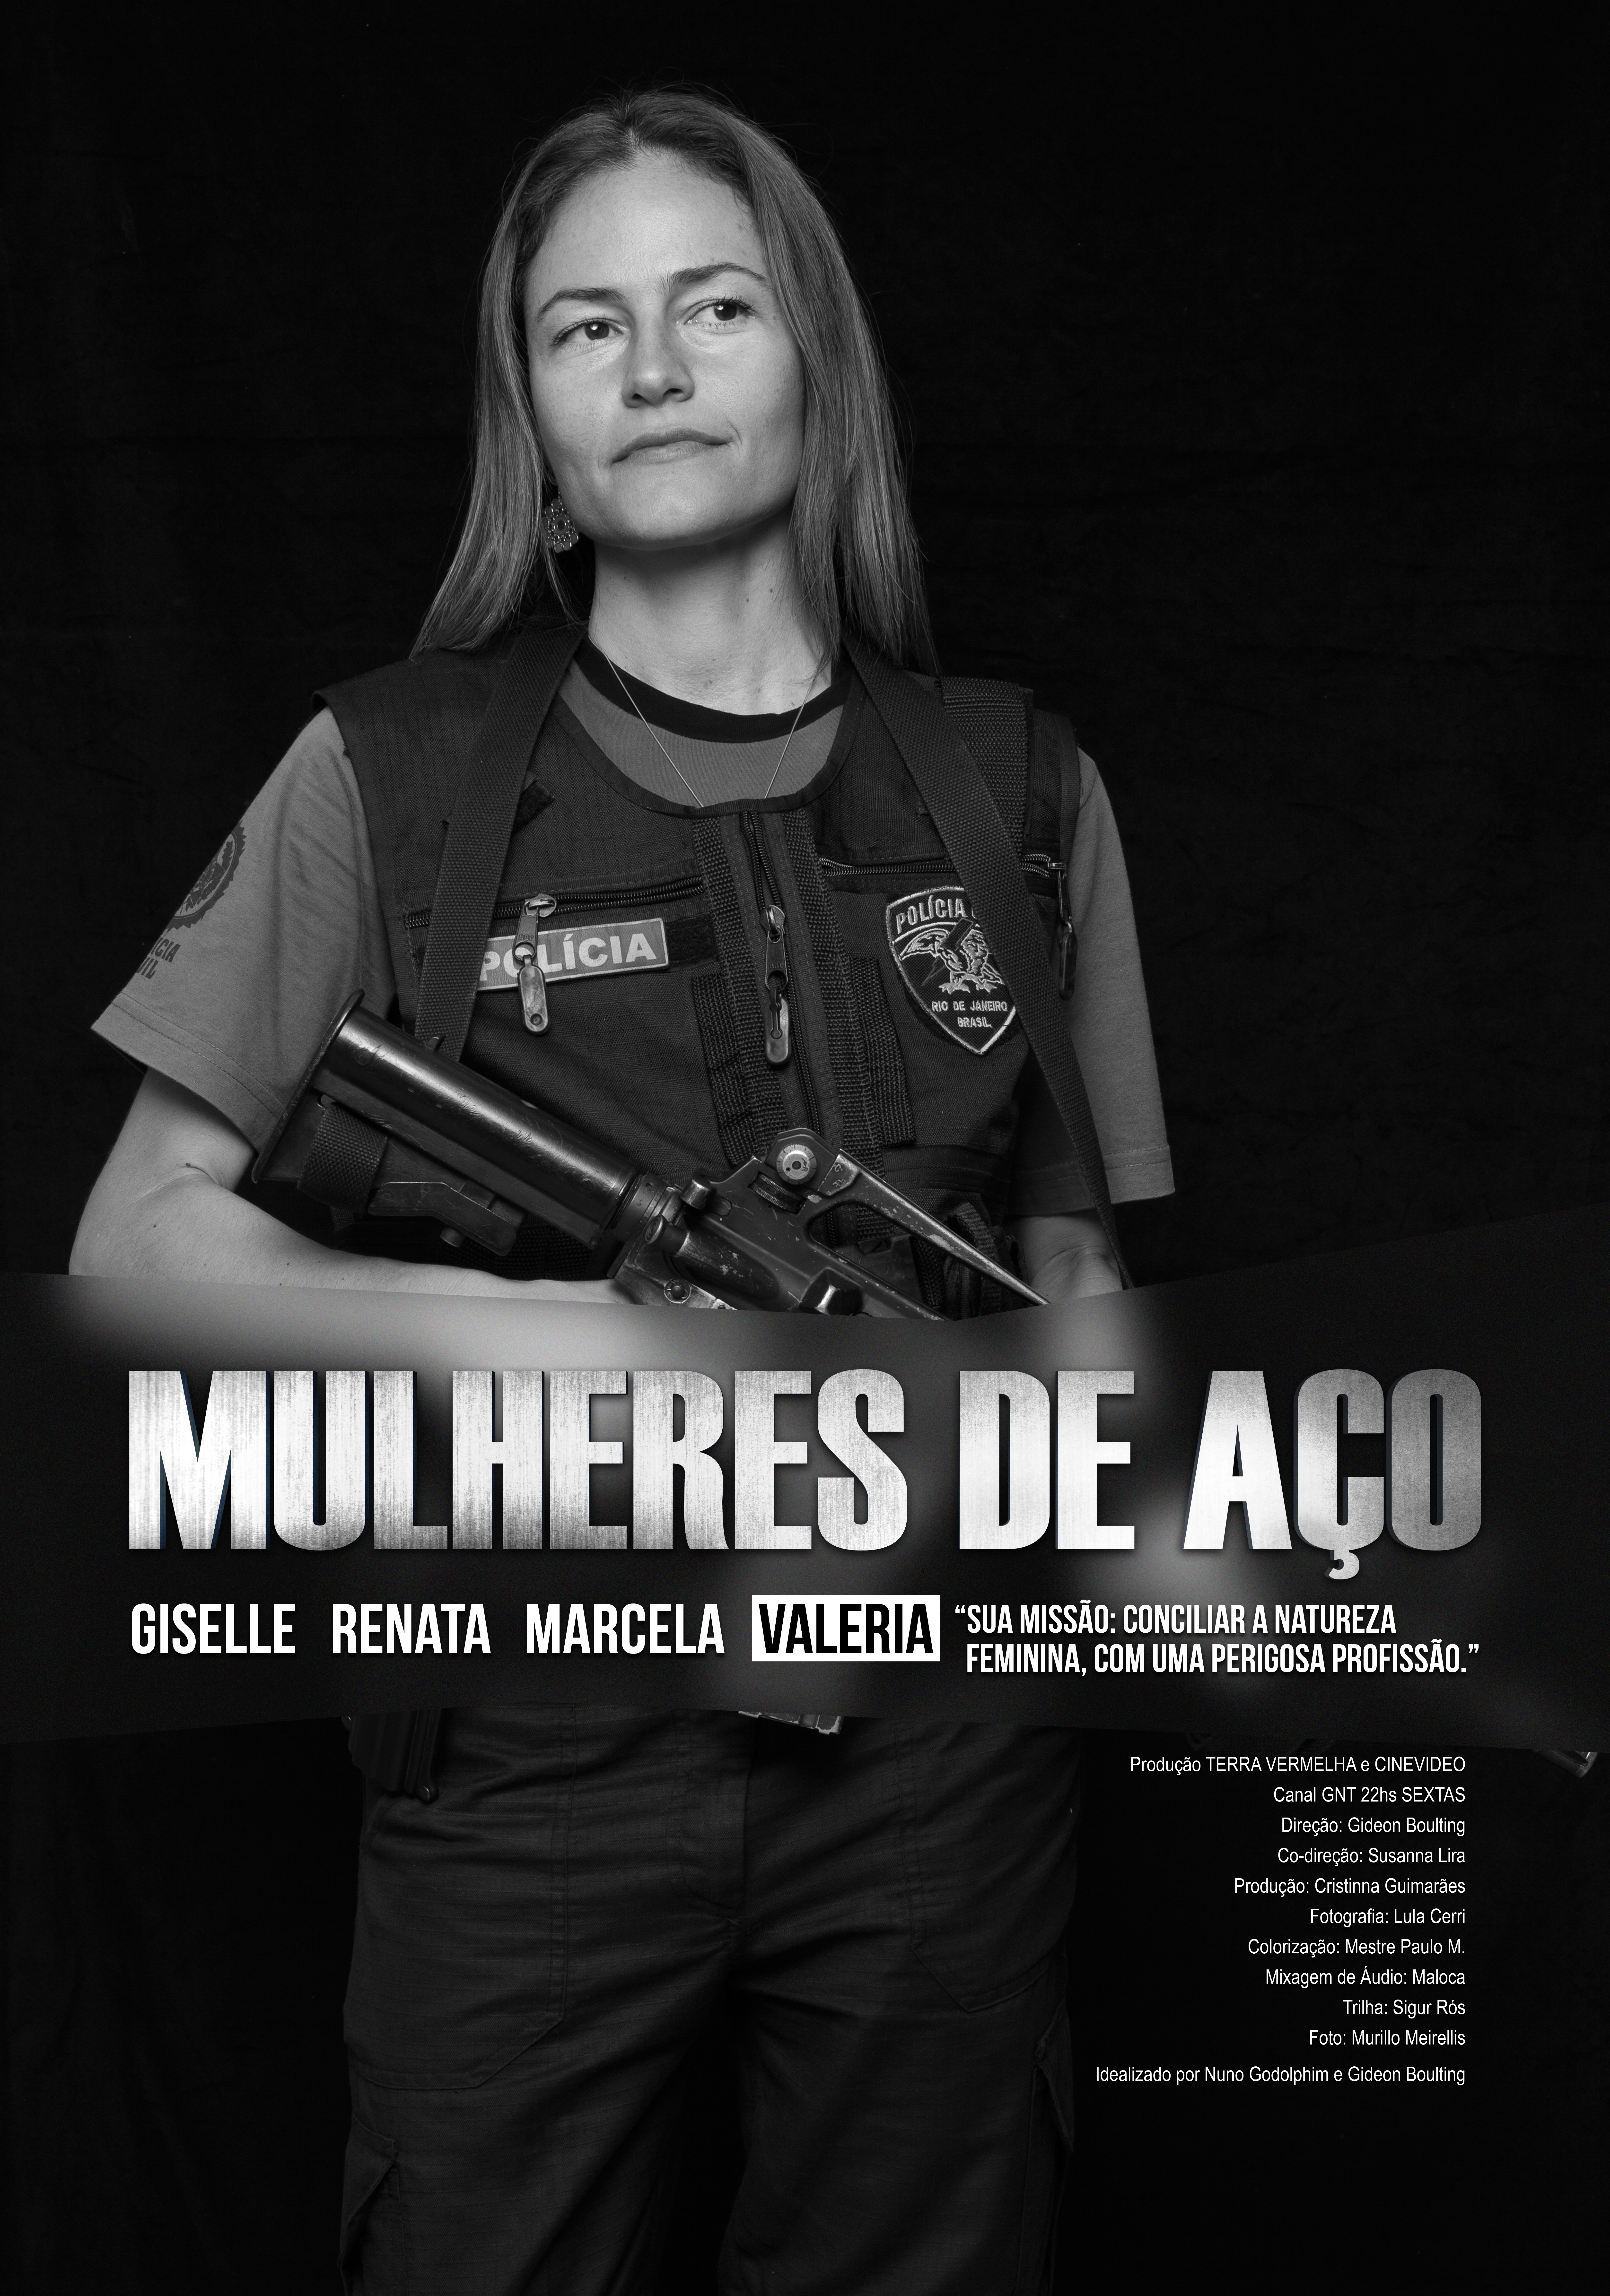 Dra Valeria Aragao - Mulheres de Aço - Series 1